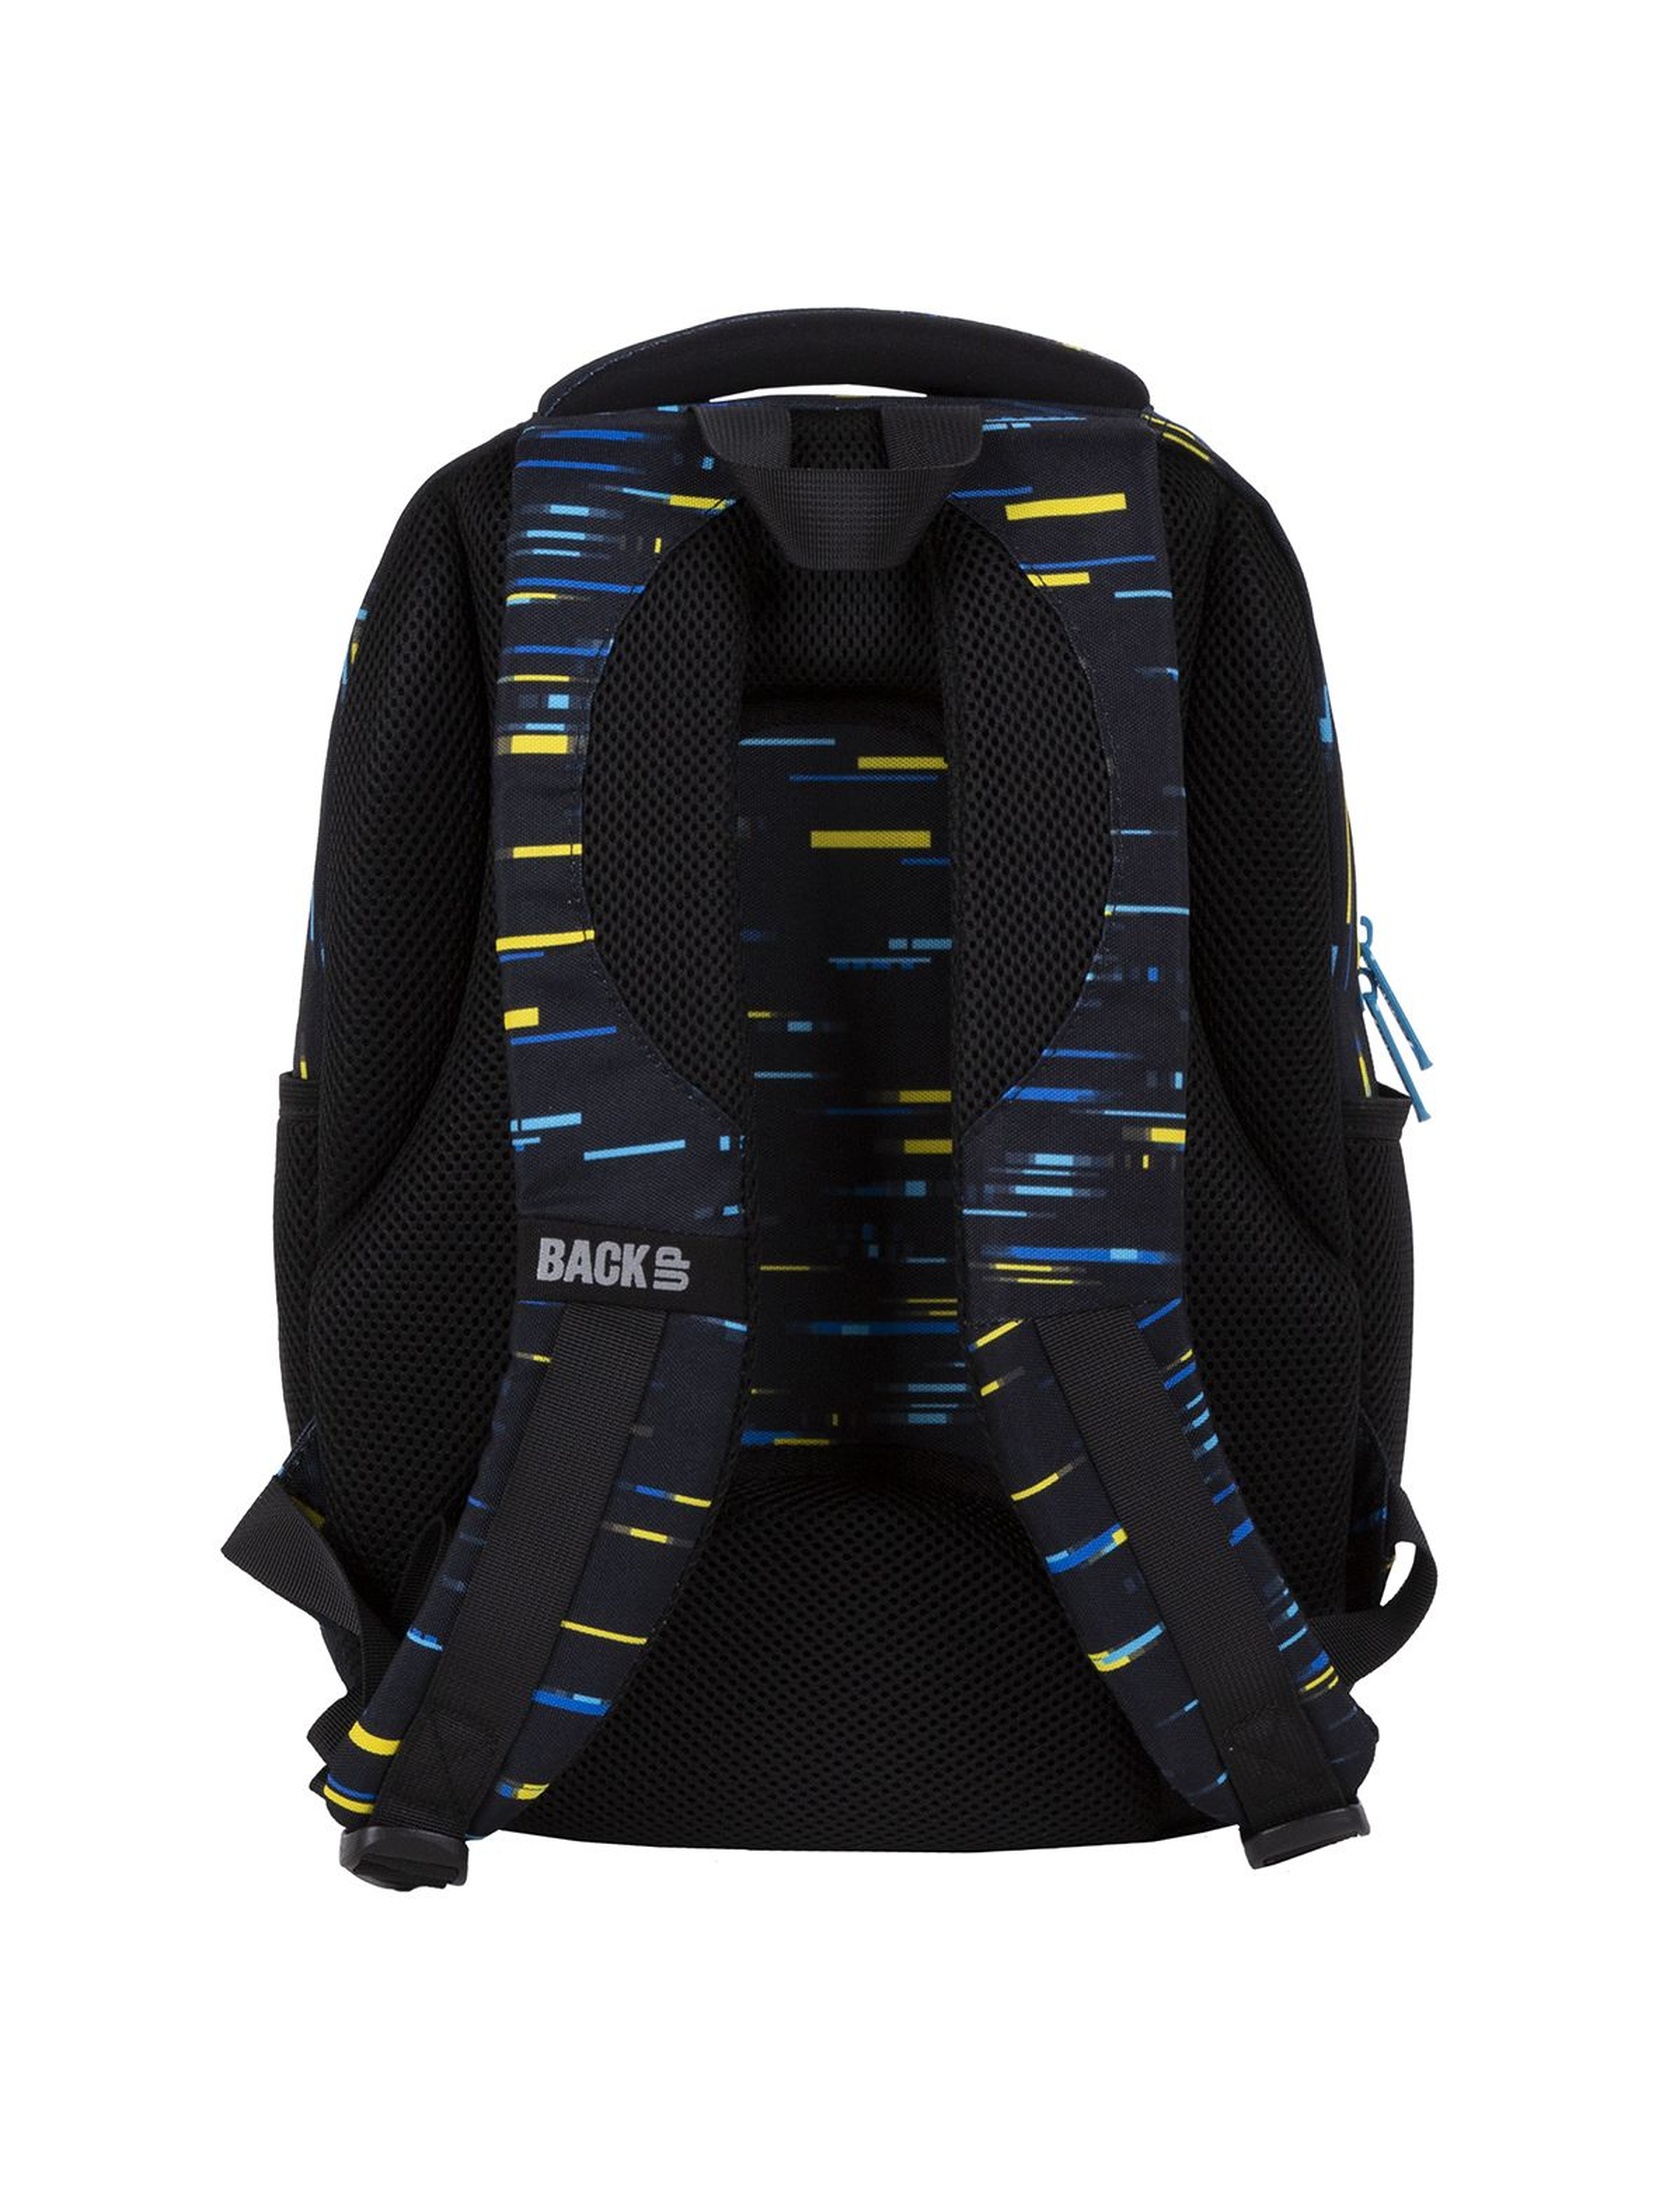 Plecak BackUp chłopięcy z kolorowymi wzorami 3komoryowy